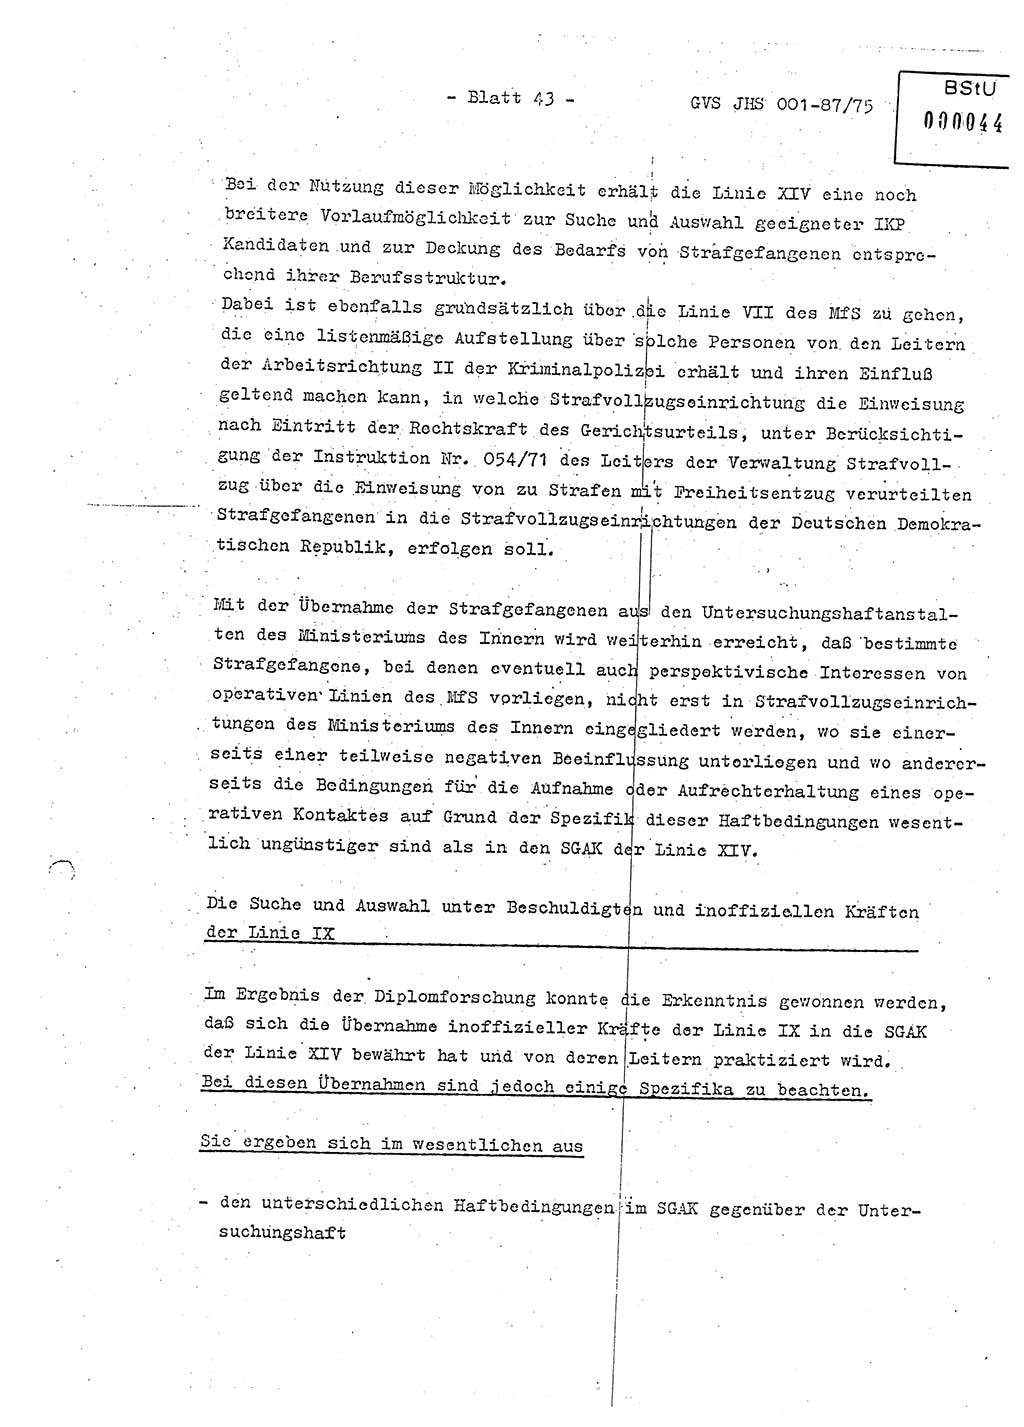 Diplomarbeit Hauptmann Volkmar Heinz (Abt. ⅩⅣ), Oberleutnant Lothar Rüdiger (BV Lpz. Abt. Ⅺ), Ministerium für Staatssicherheit (MfS) [Deutsche Demokratische Republik (DDR)], Juristische Hochschule (JHS), Geheime Verschlußsache (GVS) o001-87/75, Potsdam 1975, Seite 43 (Dipl.-Arb. MfS DDR JHS GVS o001-87/75 1975, S. 43)